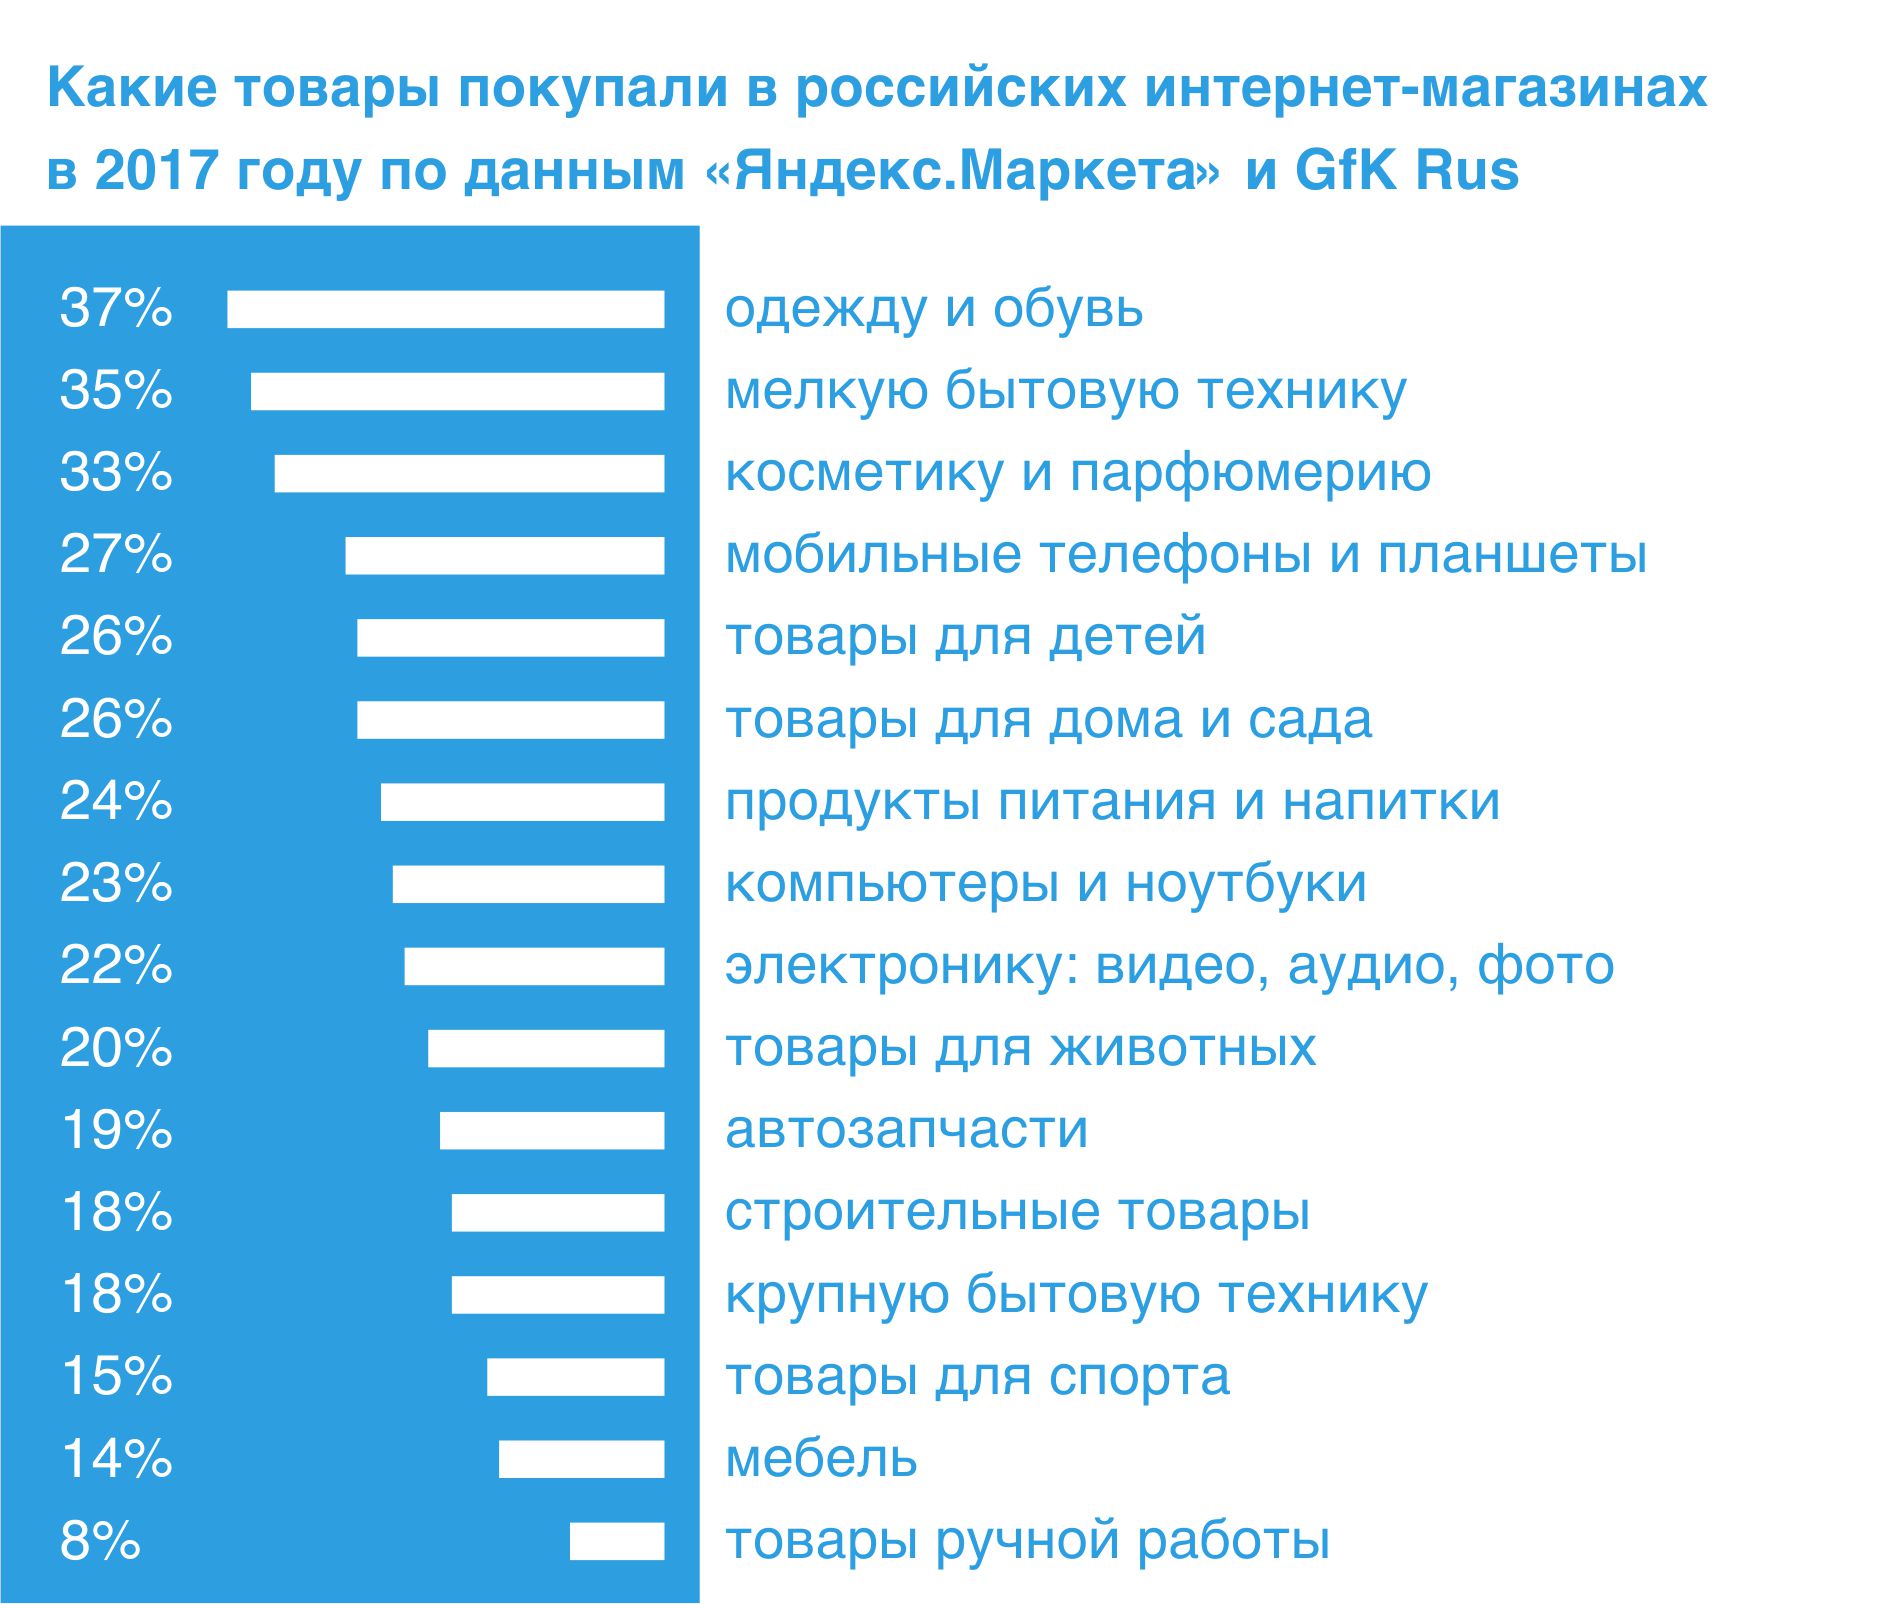 Популярные товары в российских интернет-магазинах в 2017 году по данным «Яндекс.Маркета» и GfK Rus